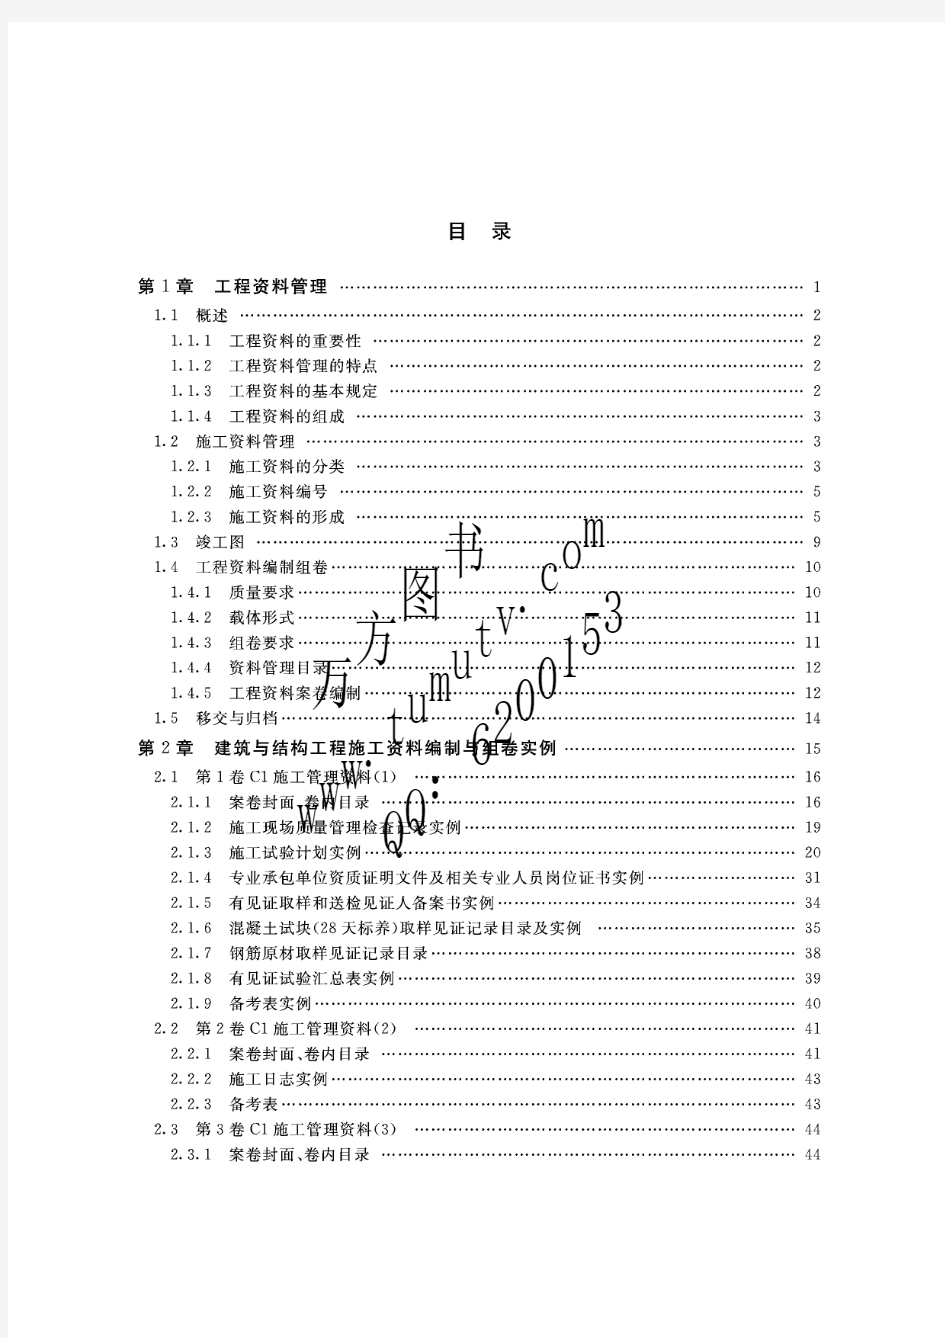 北京市建筑表格填写范例与指南下册